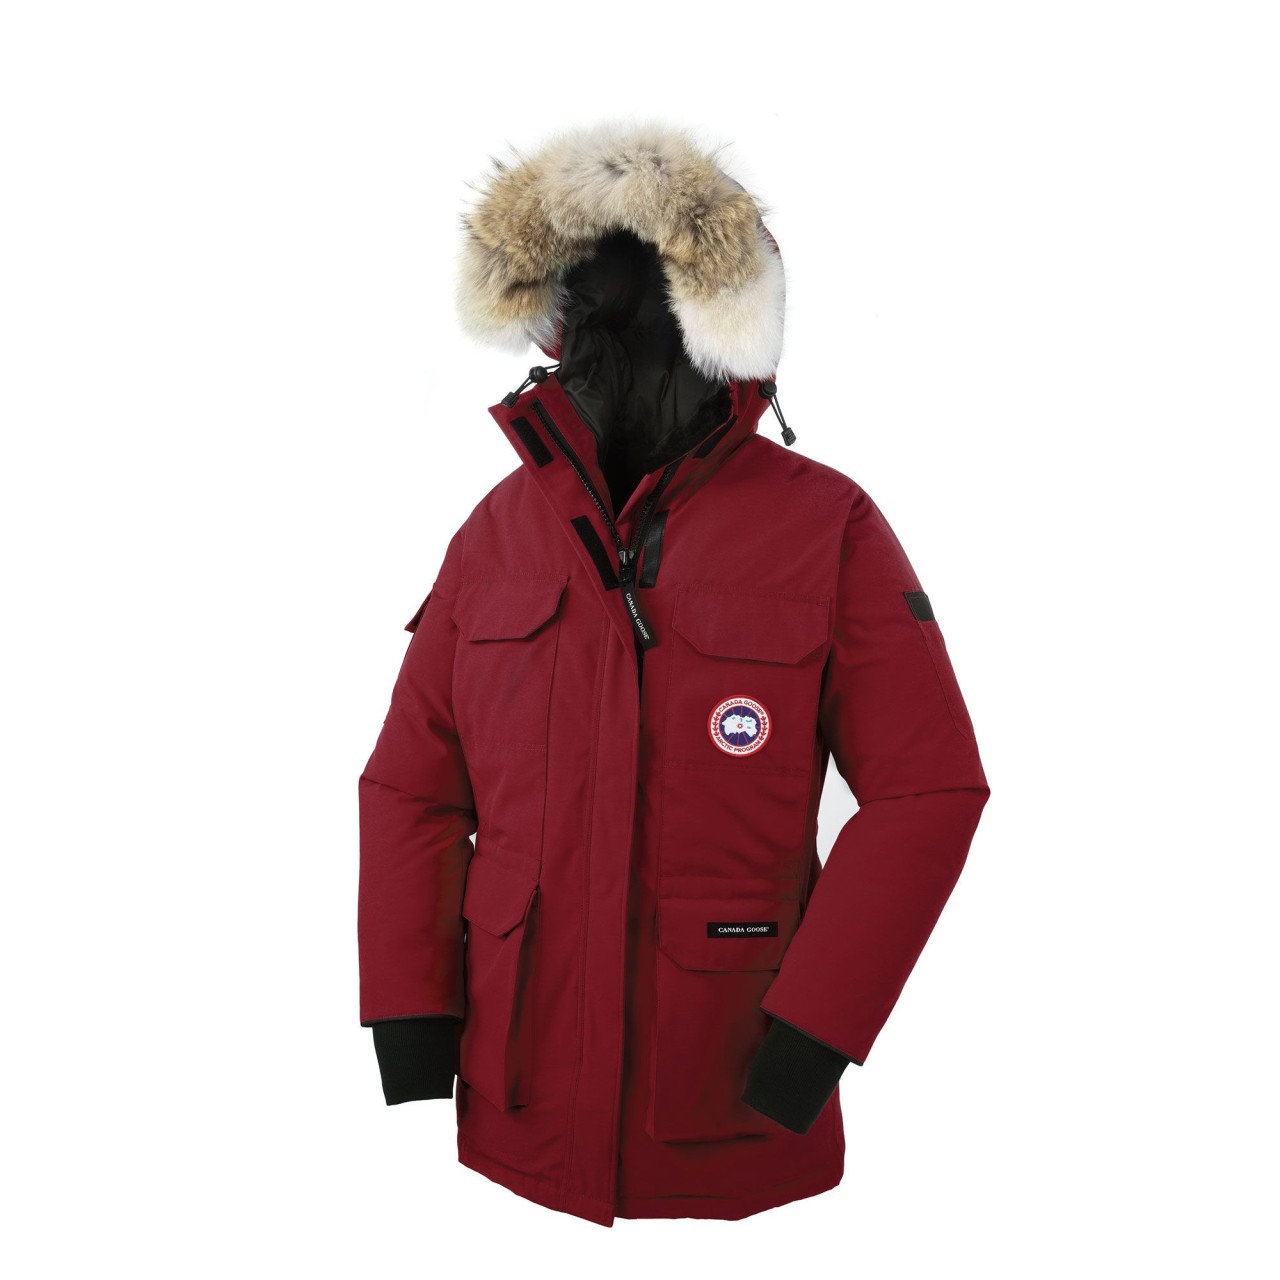 Canada Goose chilliwack parka online shop - canada goose jacket sale | canada goose jackets outlet store